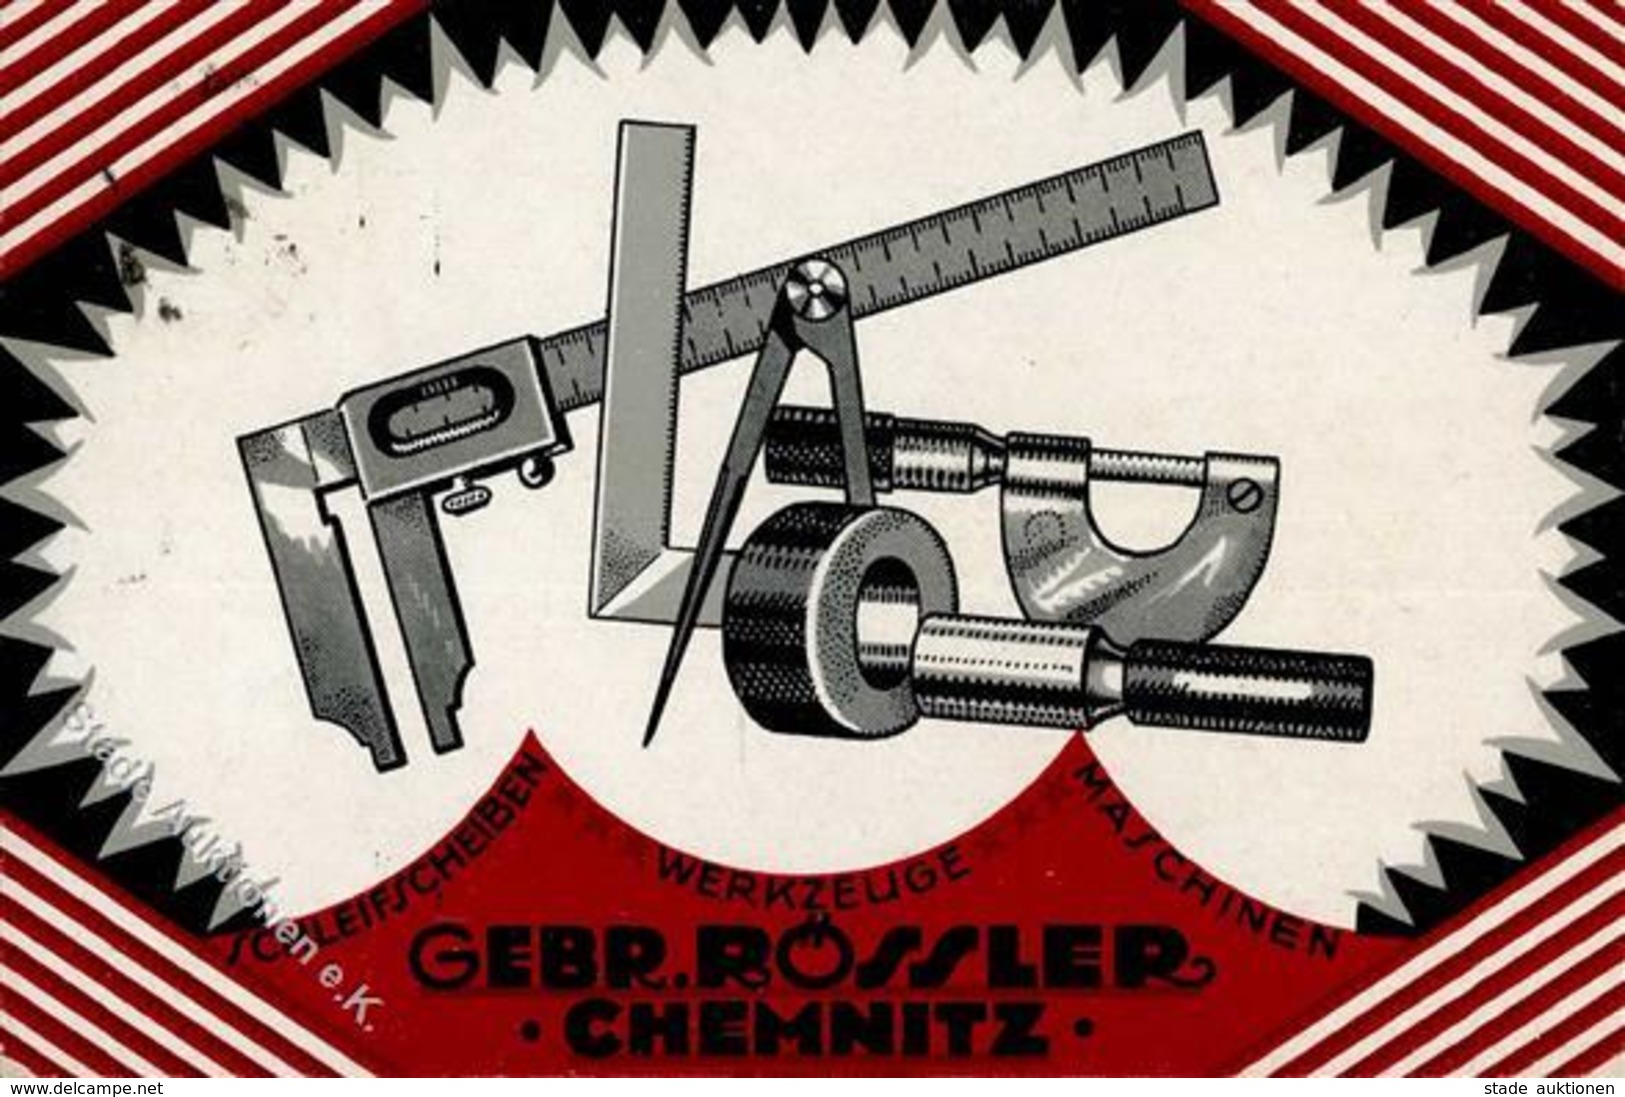 Werbung Chemnitz (O9000) Maschinen Werkzeuge Gebr. Rössler Werbe AK I-II (fleckig) Publicite - Werbepostkarten